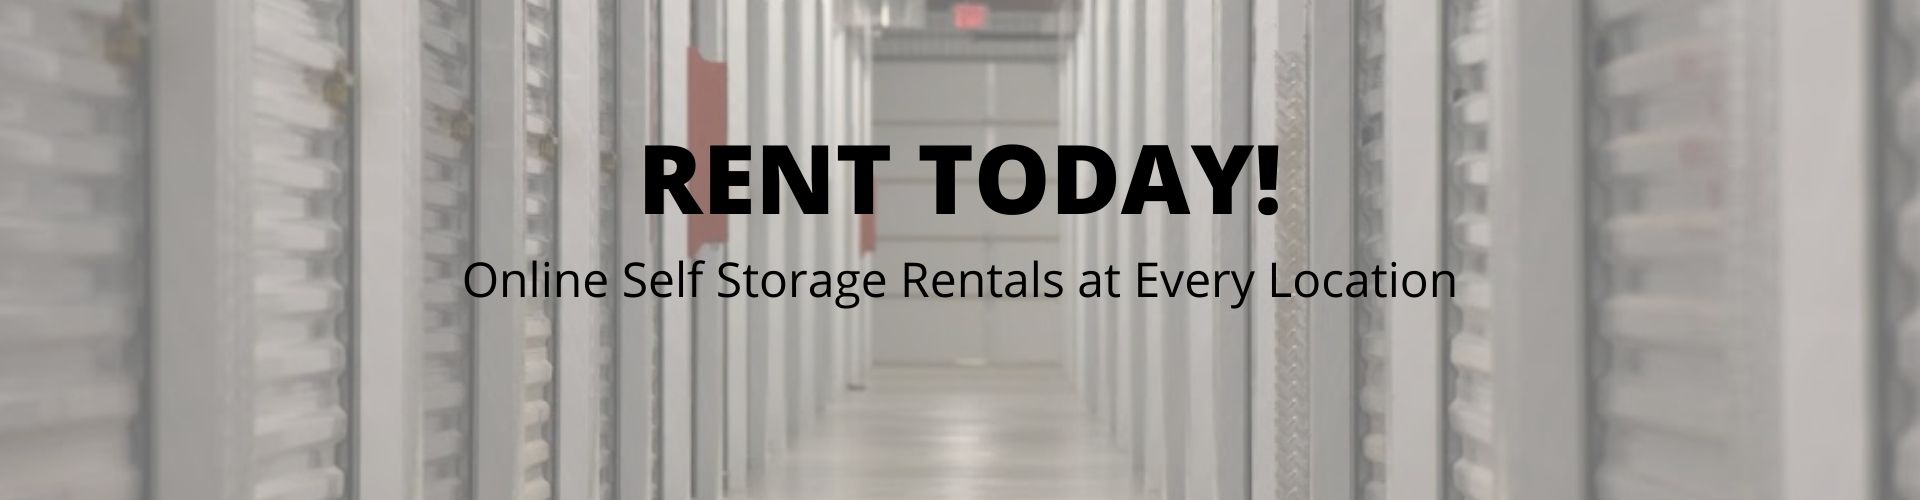 online storage rentals with All Storage in Dallas Fort Worth TX